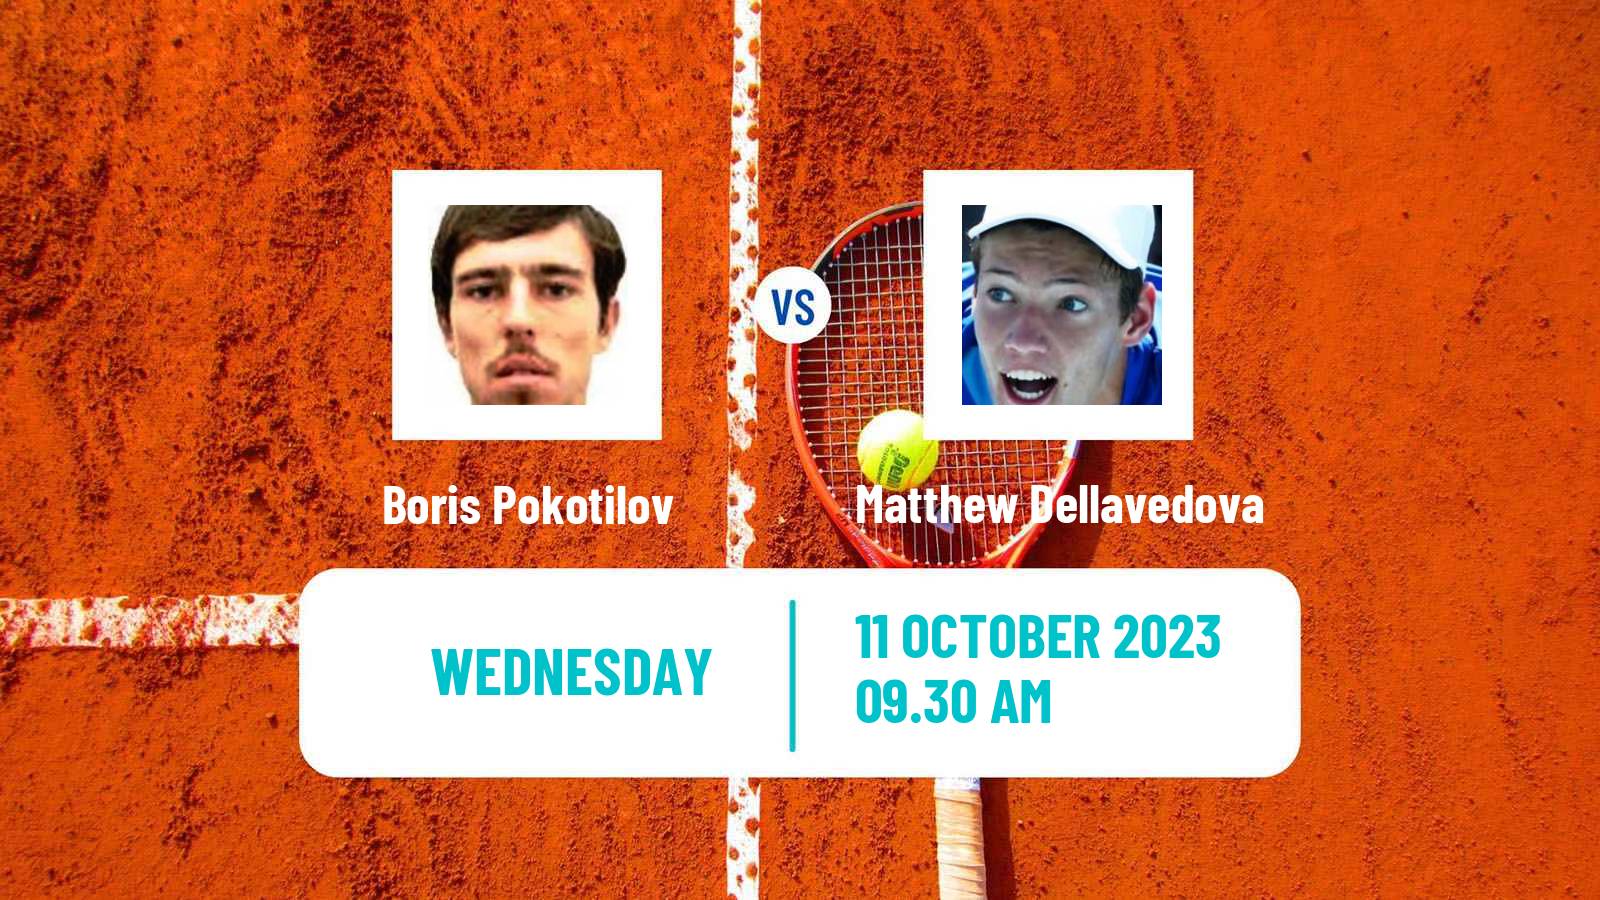 Tennis ITF M15 Doha 3 Men Boris Pokotilov - Matthew Dellavedova